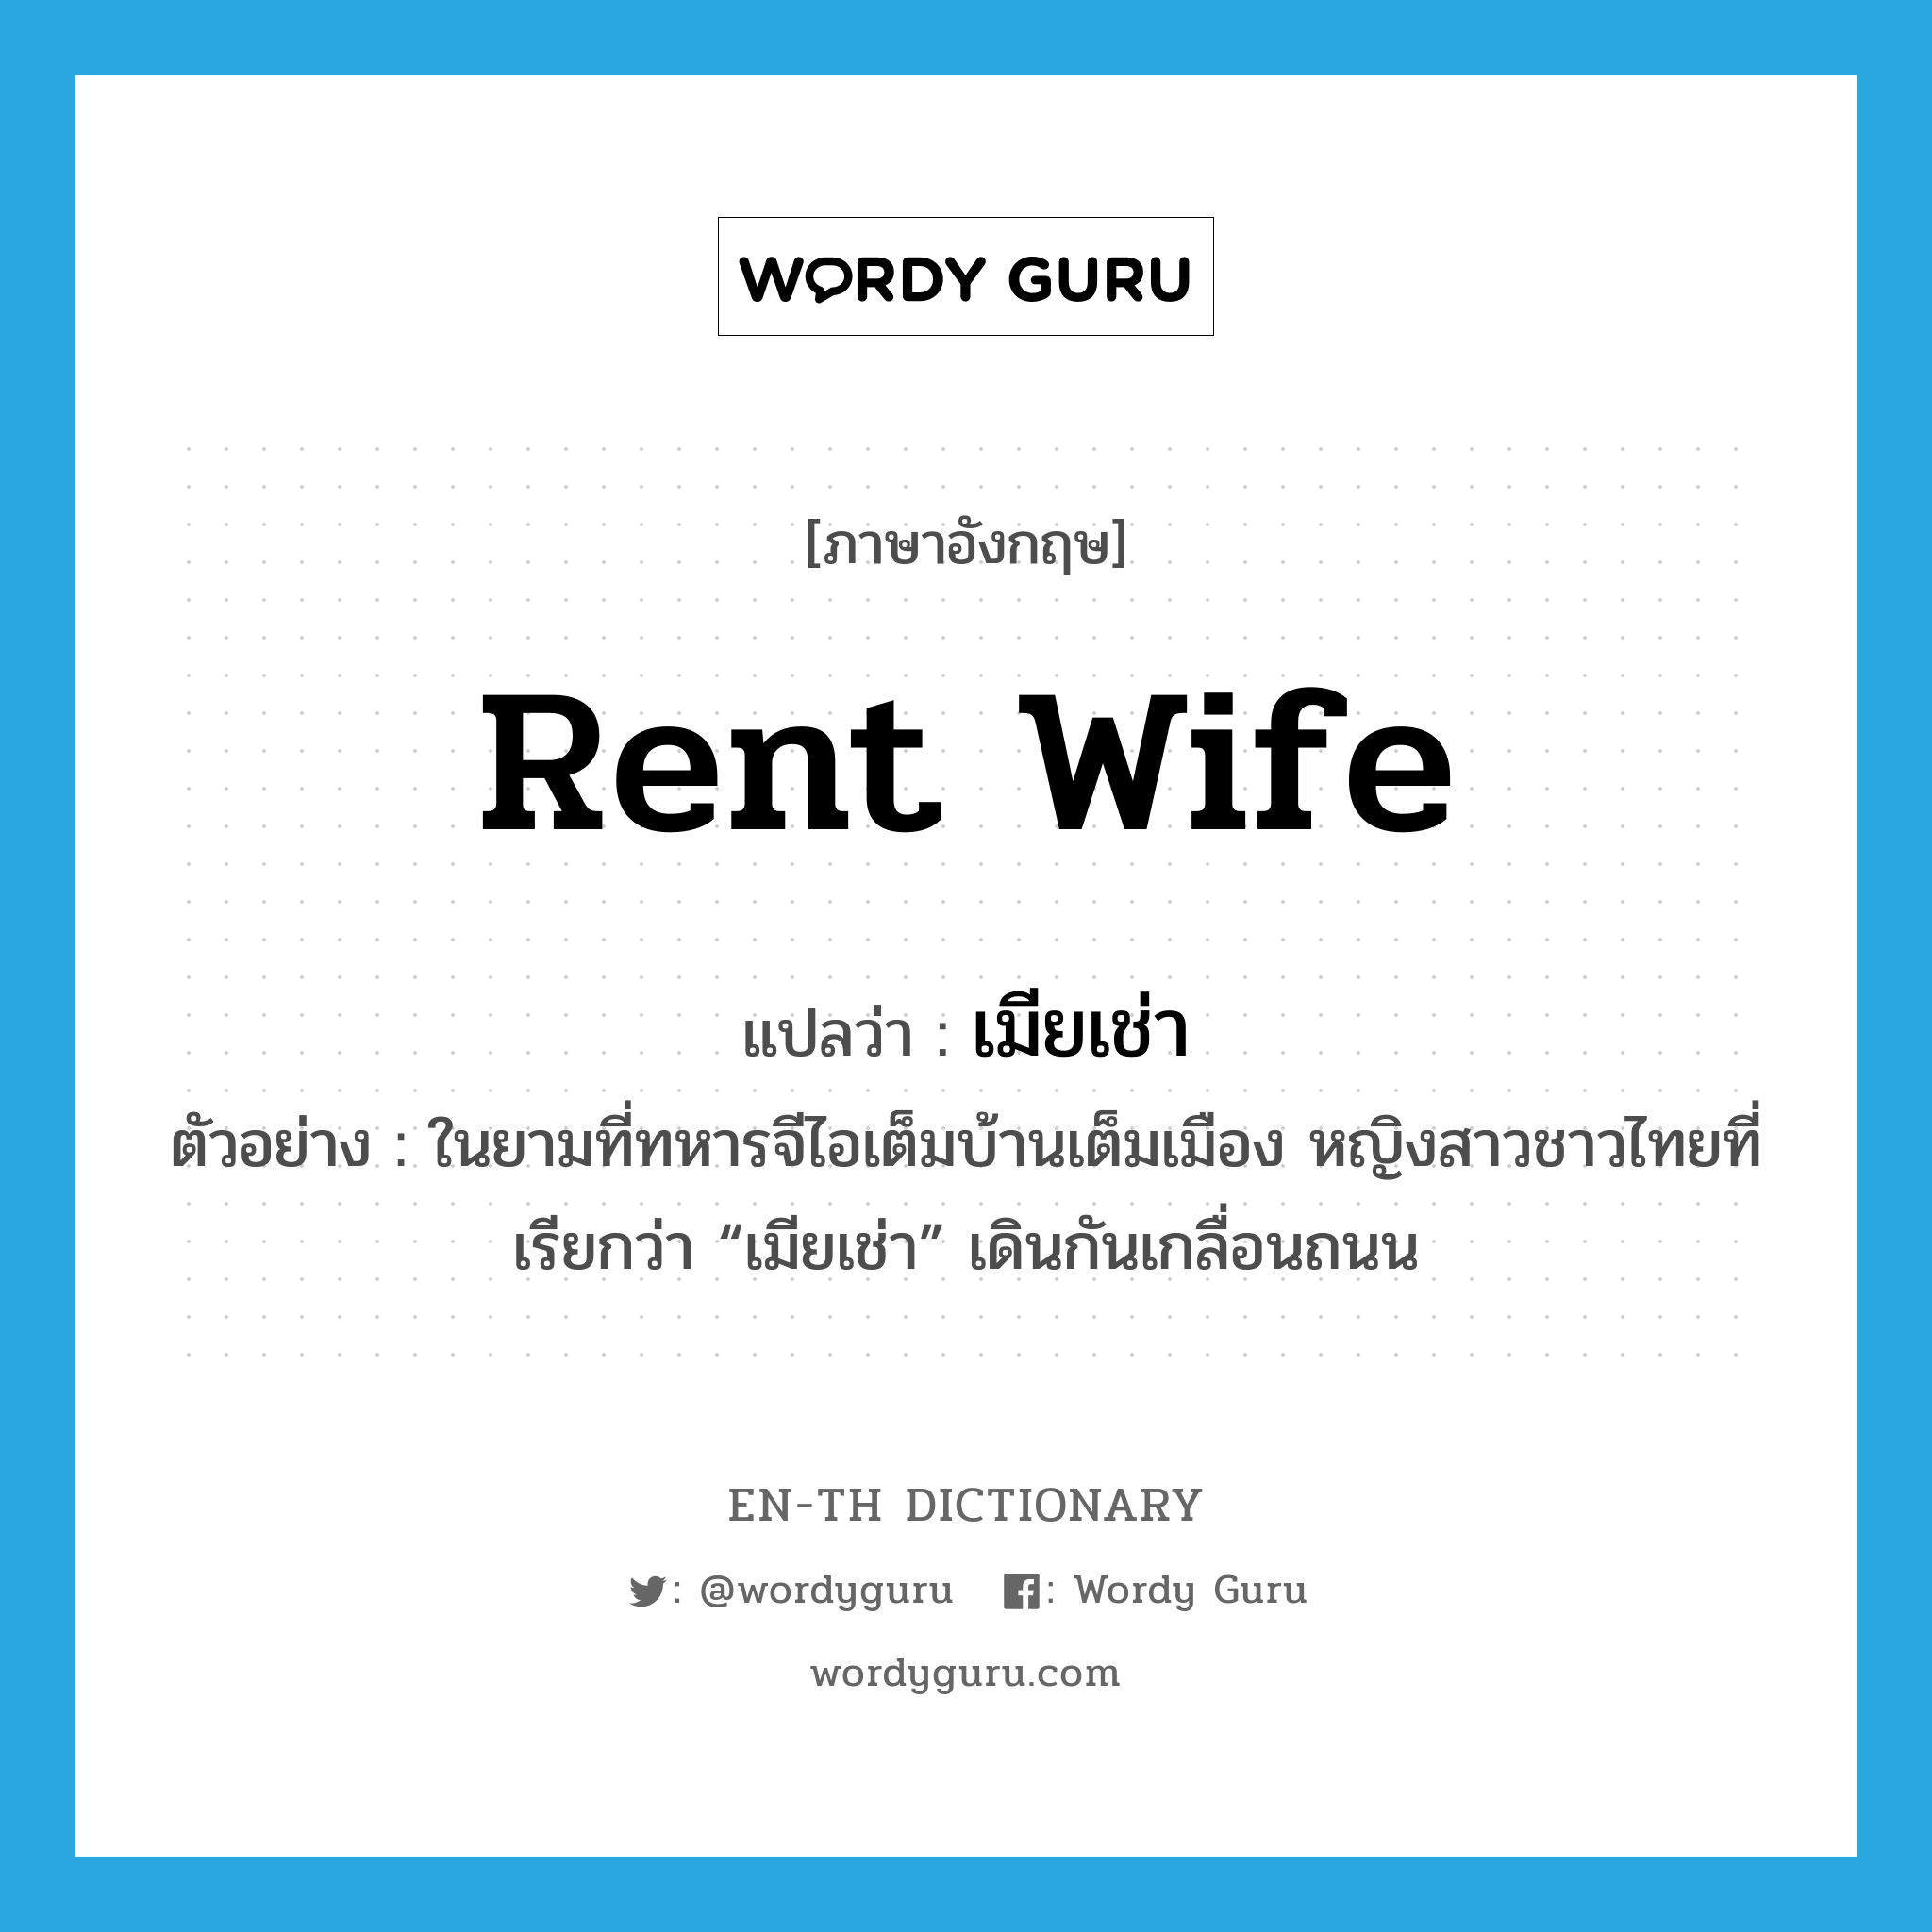 rent wife แปลว่า?, คำศัพท์ภาษาอังกฤษ rent wife แปลว่า เมียเช่า ประเภท N ตัวอย่าง ในยามที่ทหารจีไอเต็มบ้านเต็มเมือง หญิงสาวชาวไทยที่เรียกว่า “เมียเช่า” เดินกันเกลื่อนถนน หมวด N